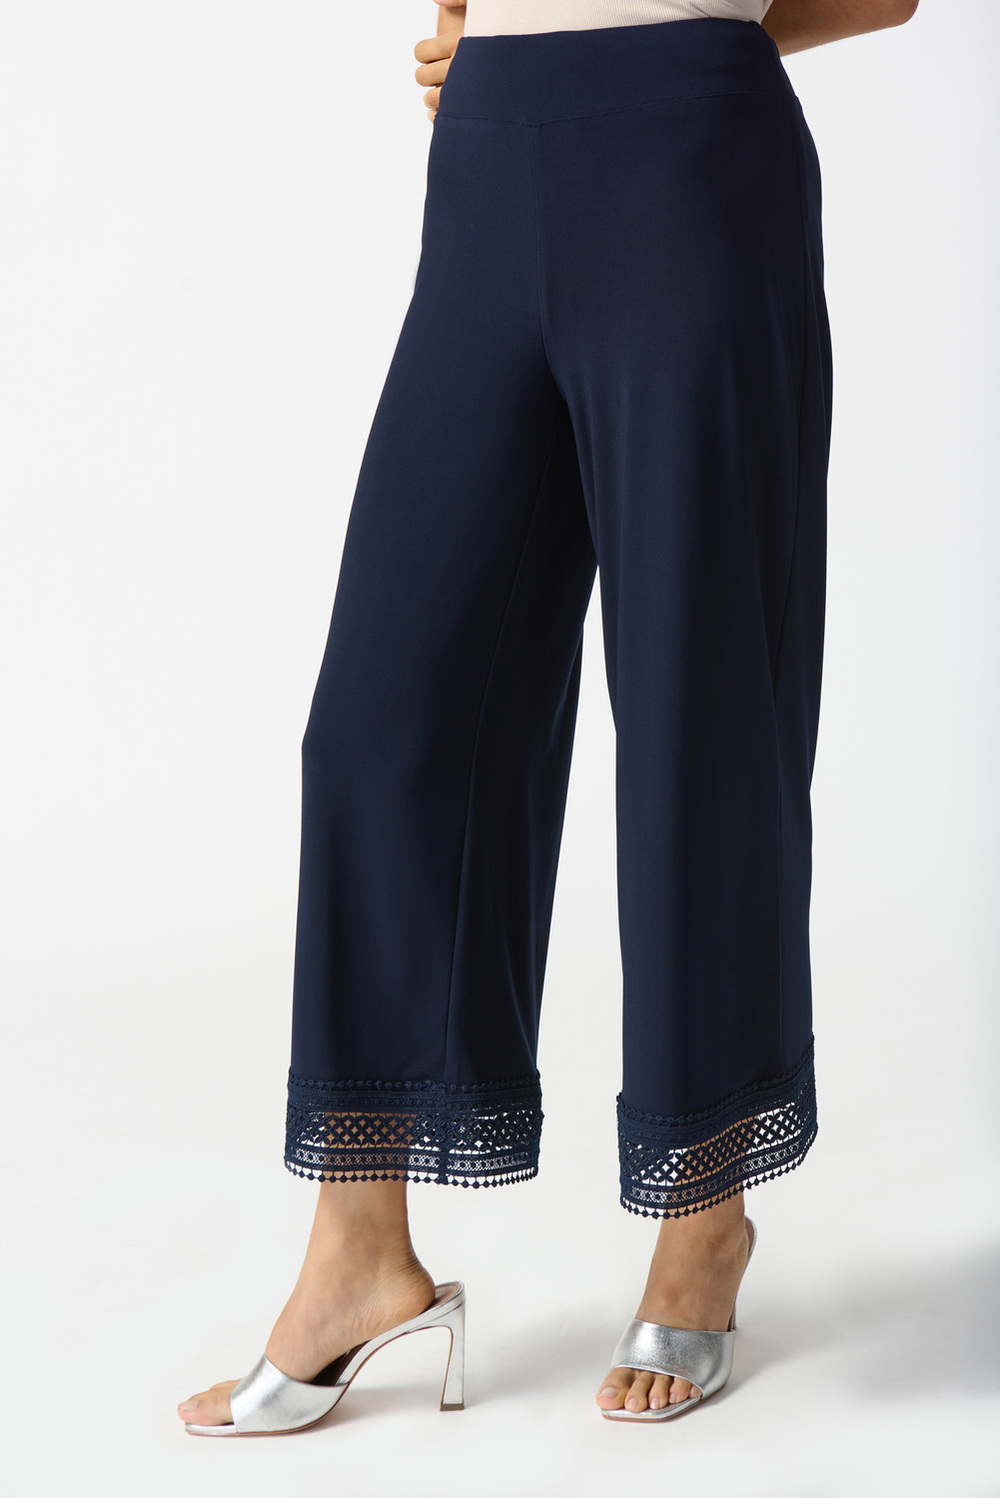 Pantalon 7/8, dentelle géométrique modèle 242134. Bleu Nuit